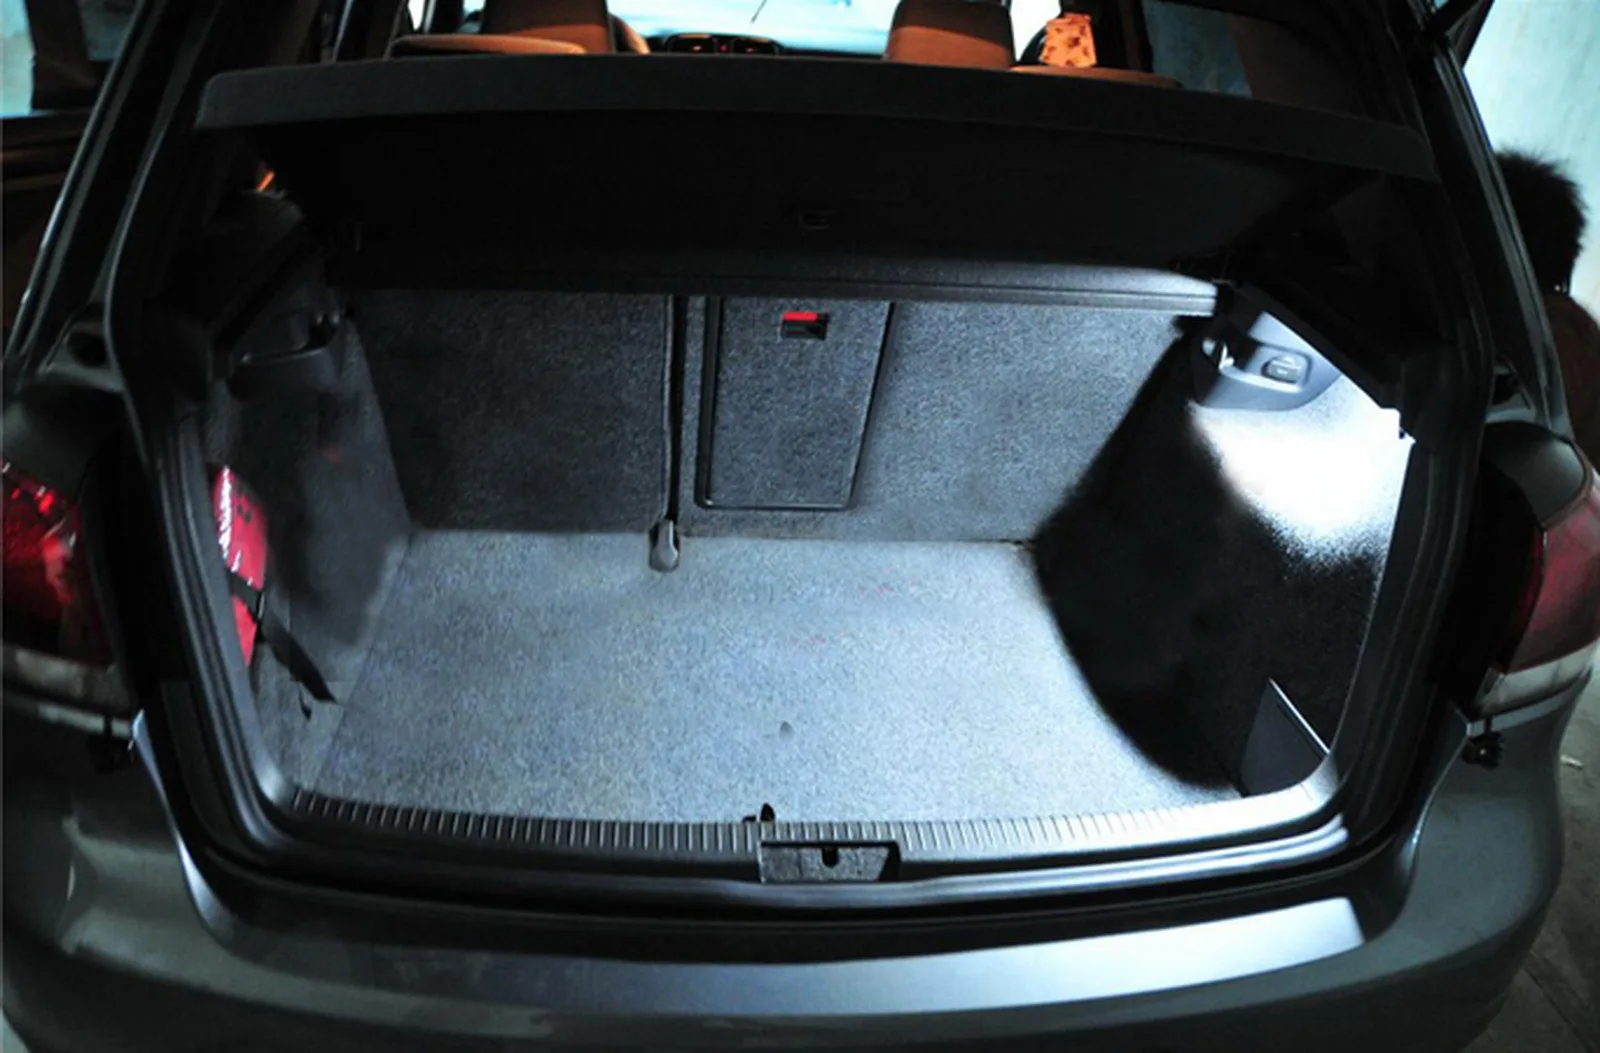 ANGRONG 2шт Canbus светодиодный багажный багажник фонарь для багажника для VW Caddy Golf Plus Sharan Scirocco Touareg